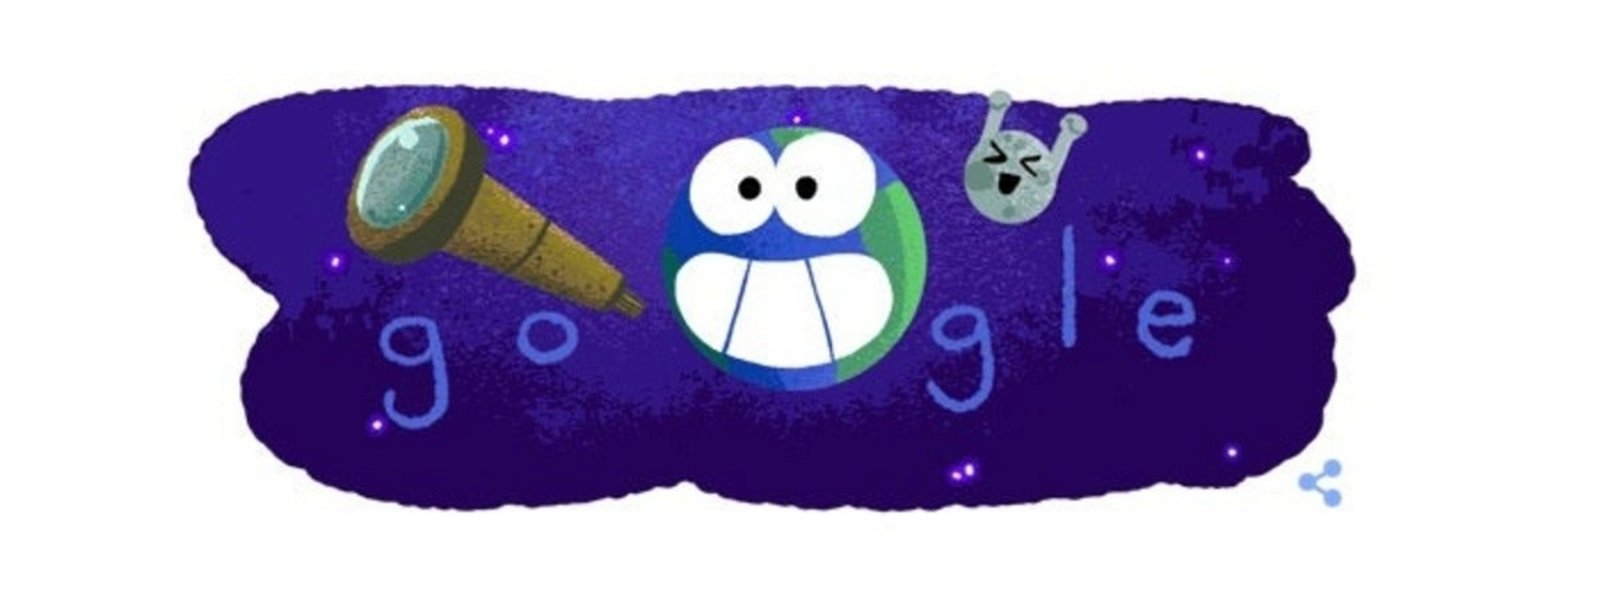 doodle google nasa